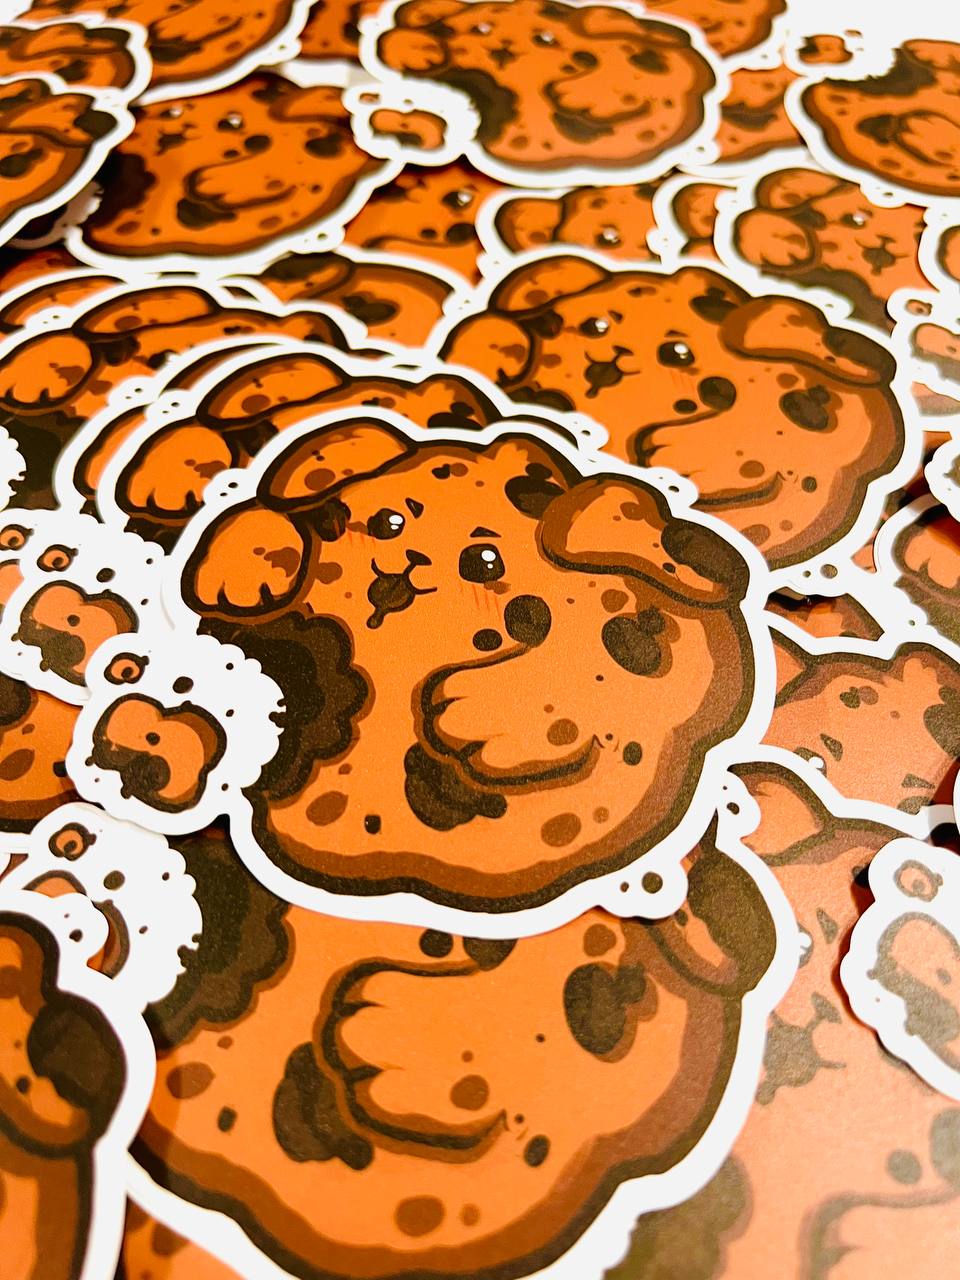 Cookie Dog Sticker